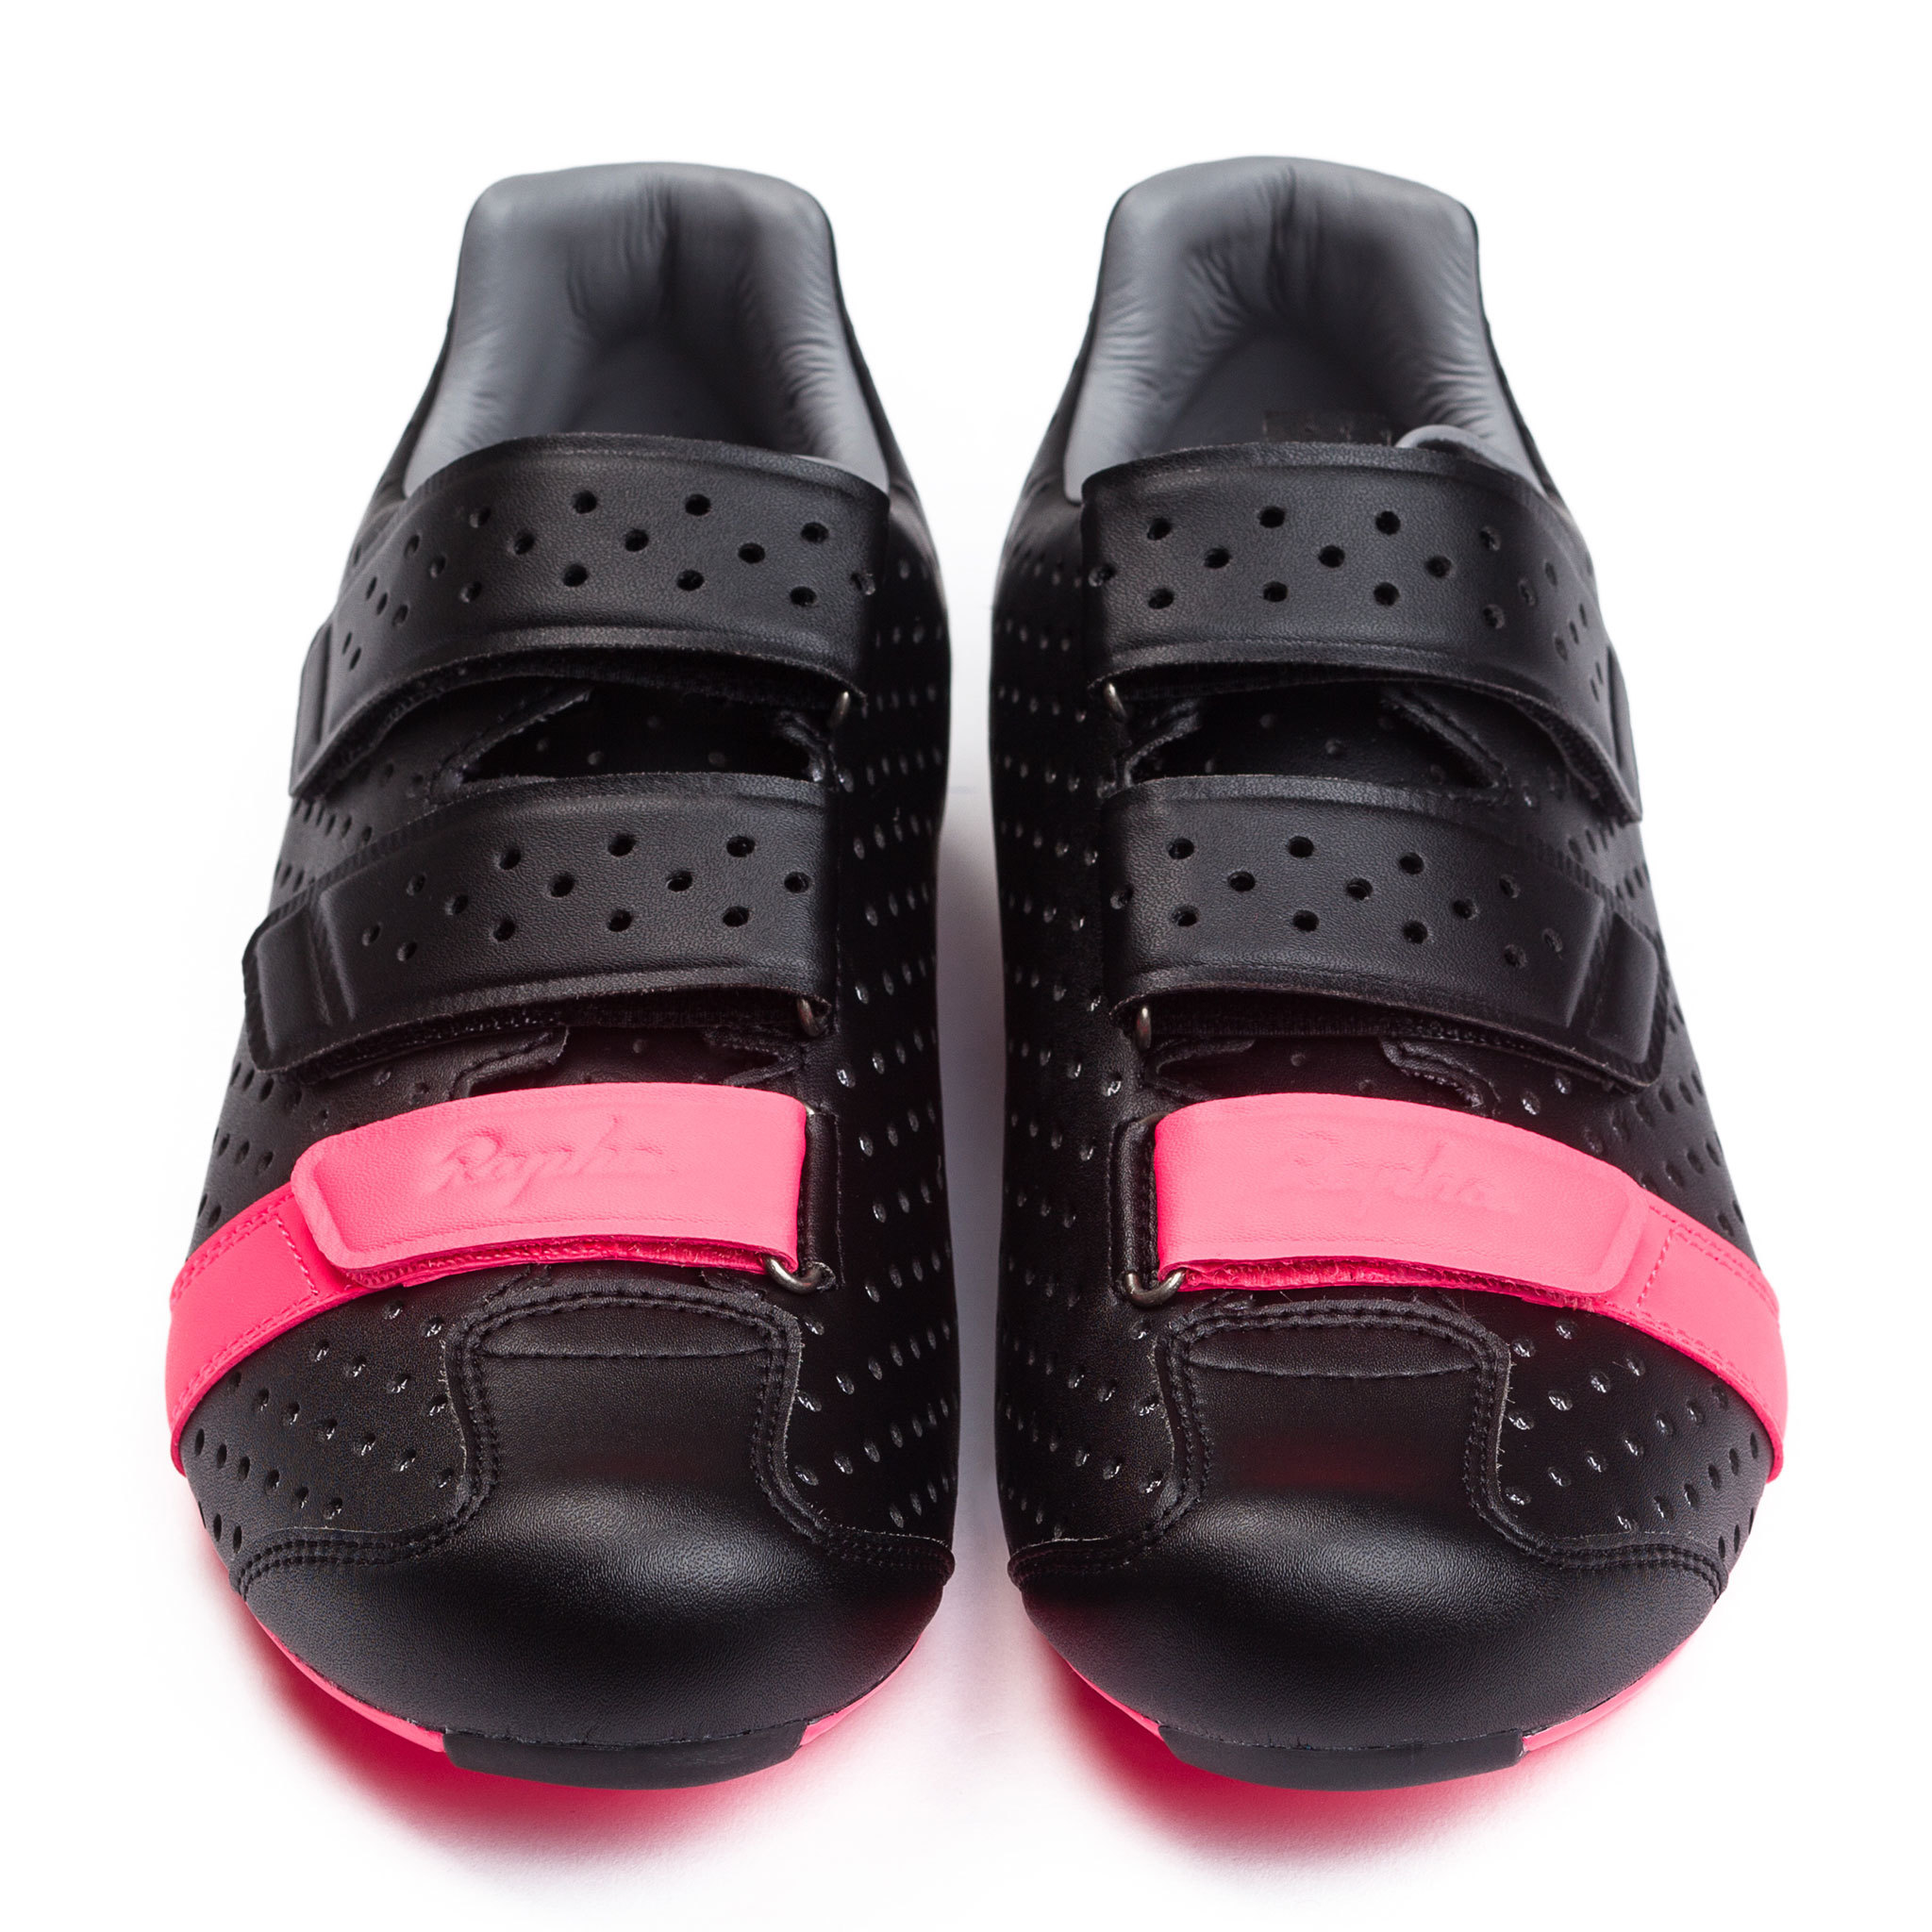 Rapha Climber's Shoes i svart och rosa.